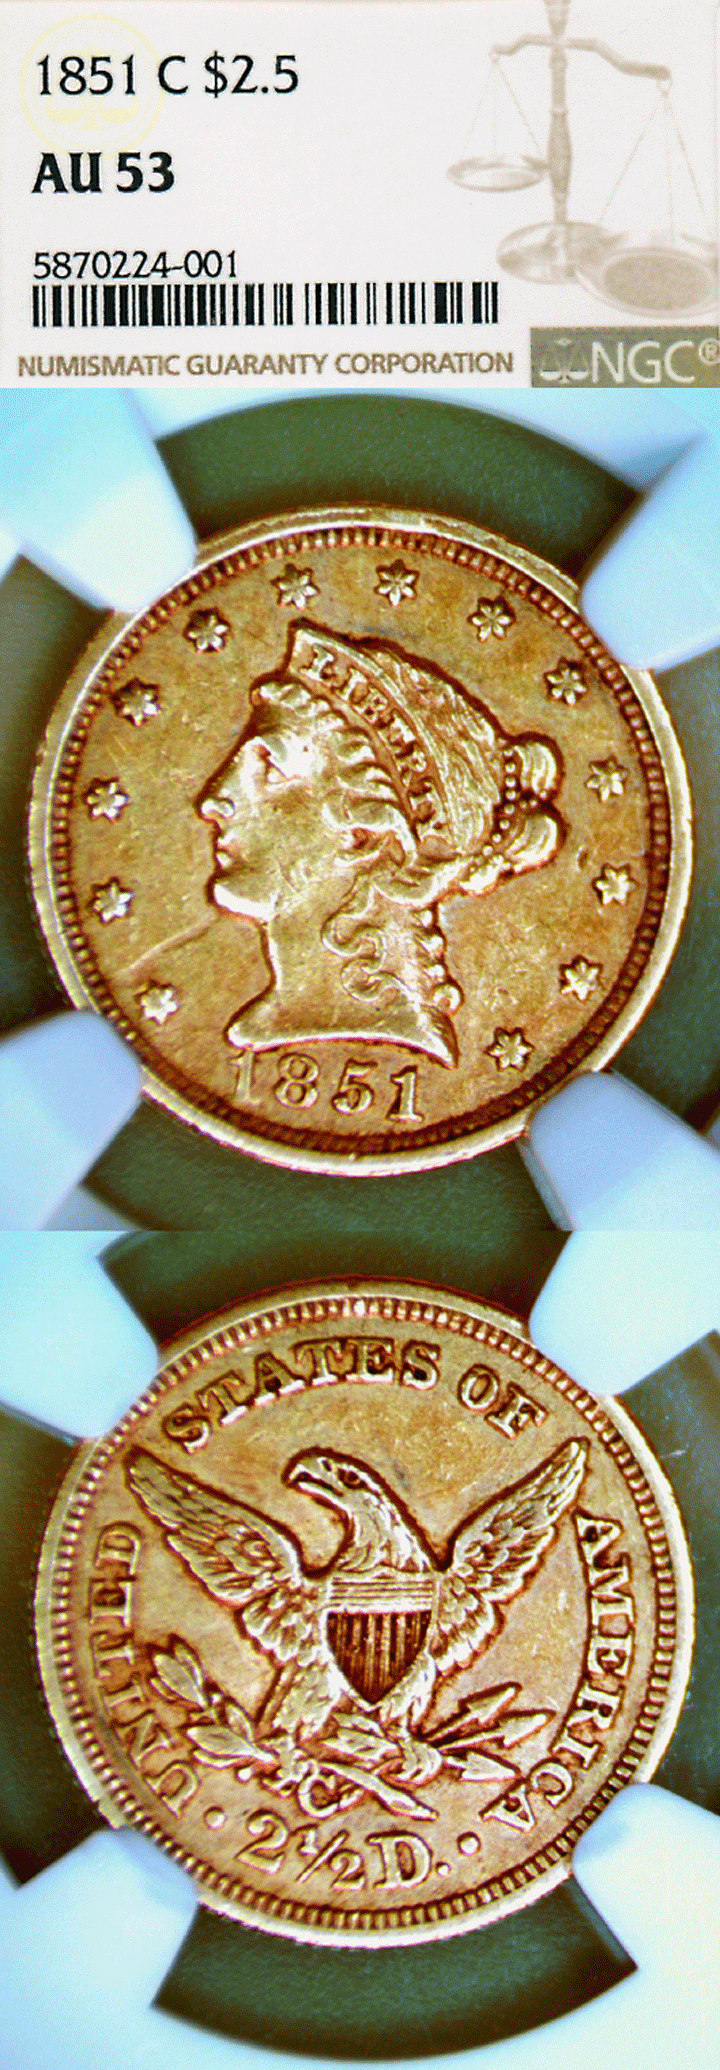 1851-C $2.50 "Charlotte Mint" NGC AU-53